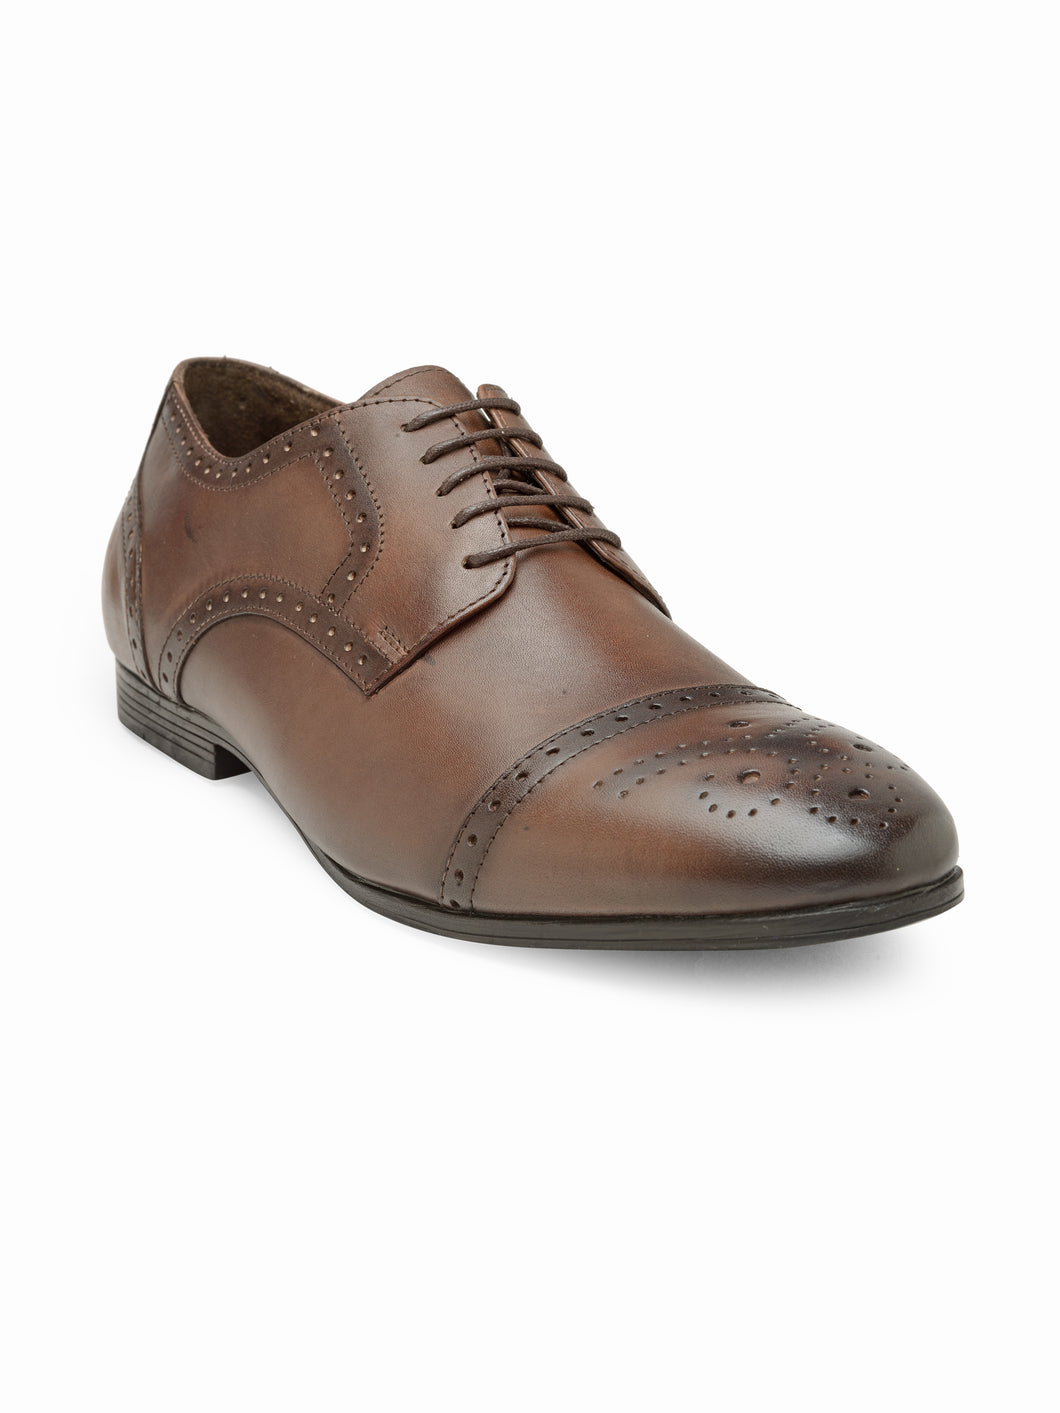 Teakwood Genuine Leathers Men Brown Formal Derby's Shoes